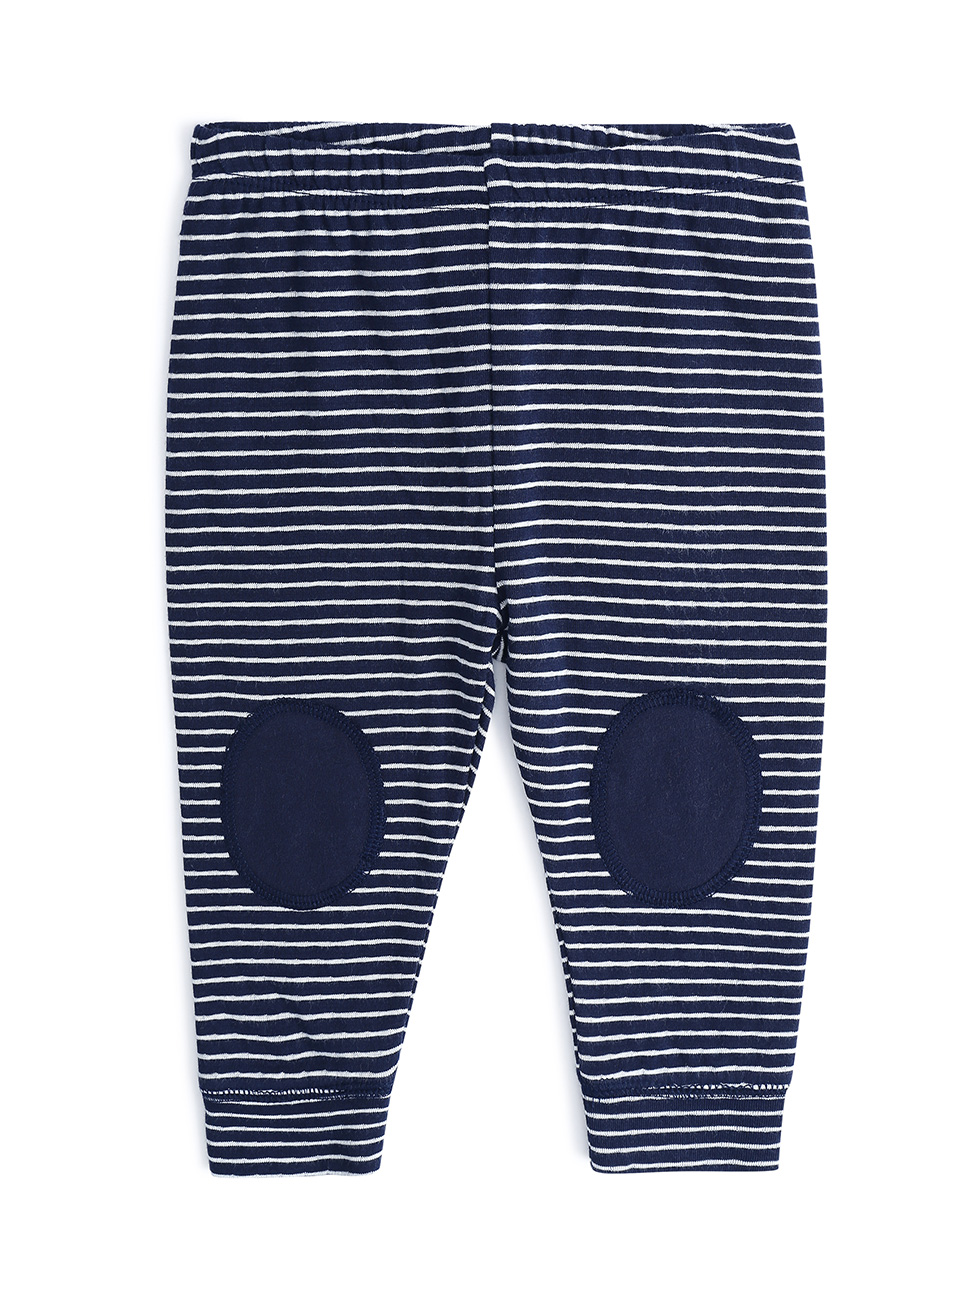 嬰兒裝|棉質條紋膝蓋拼布運動褲-海軍藍色